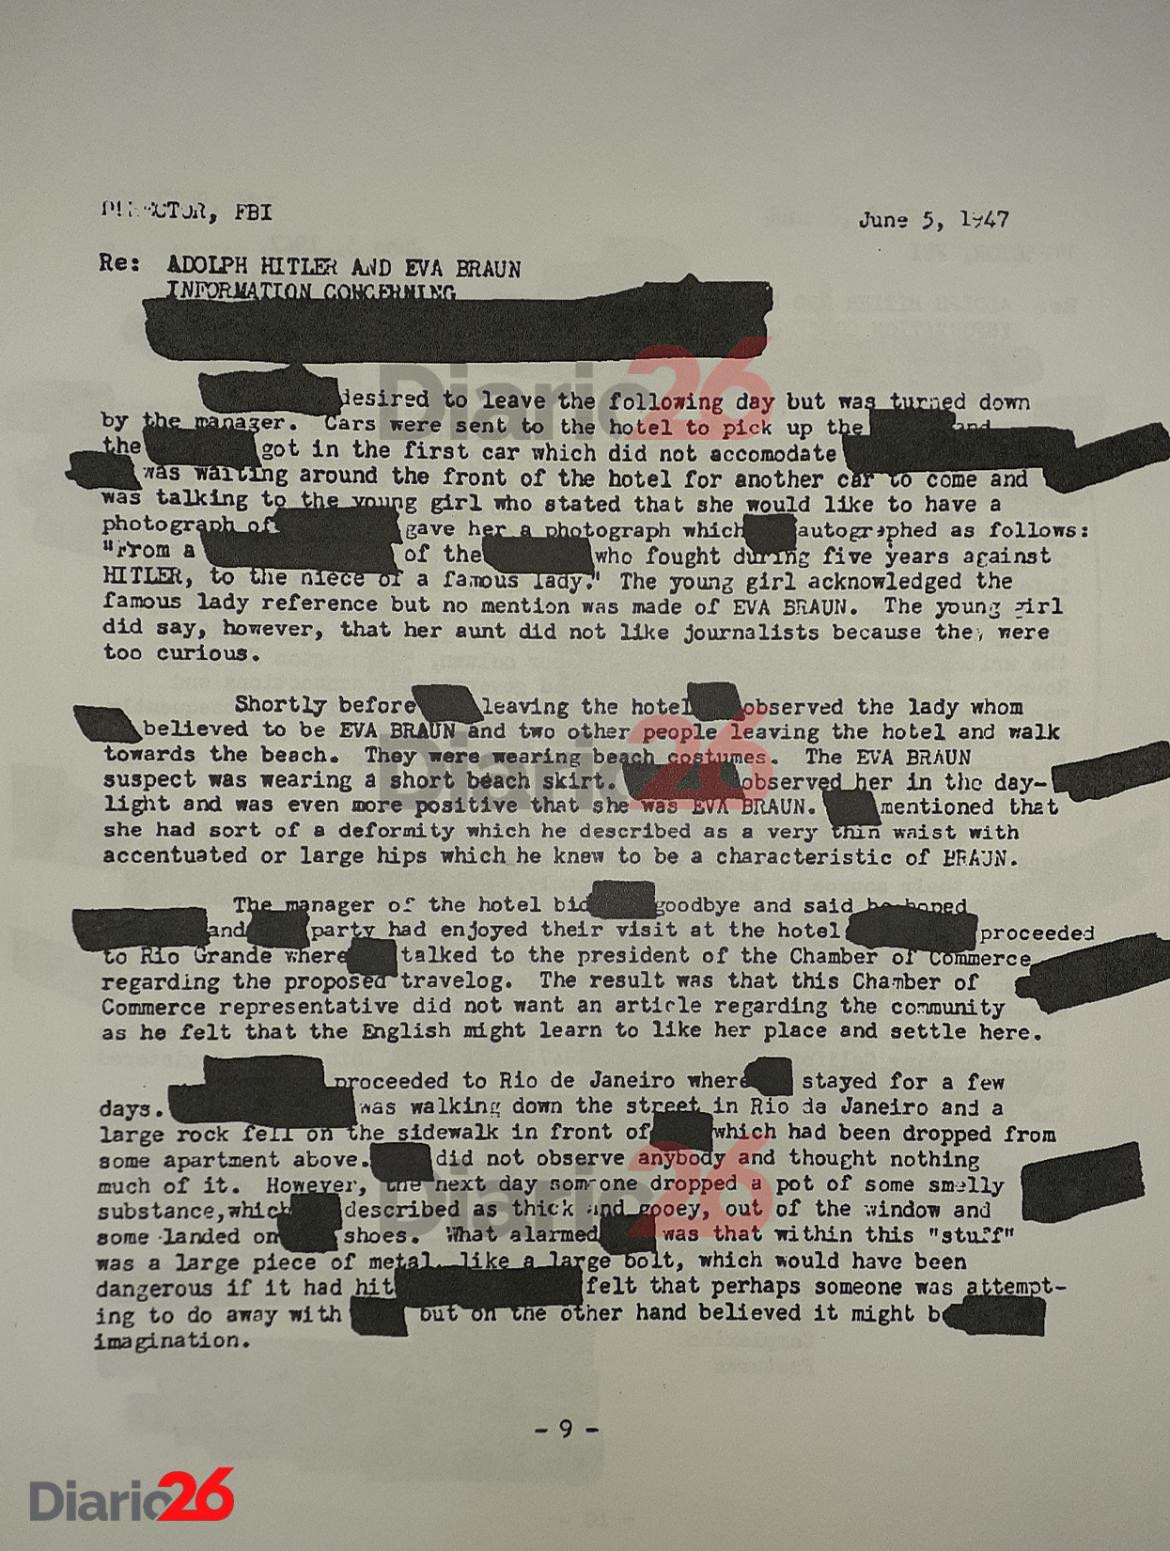 Adolf Hitler en Brasil, Hotel Atlántico, Cassino, documento desclasificado del FBI de 1947 - 09